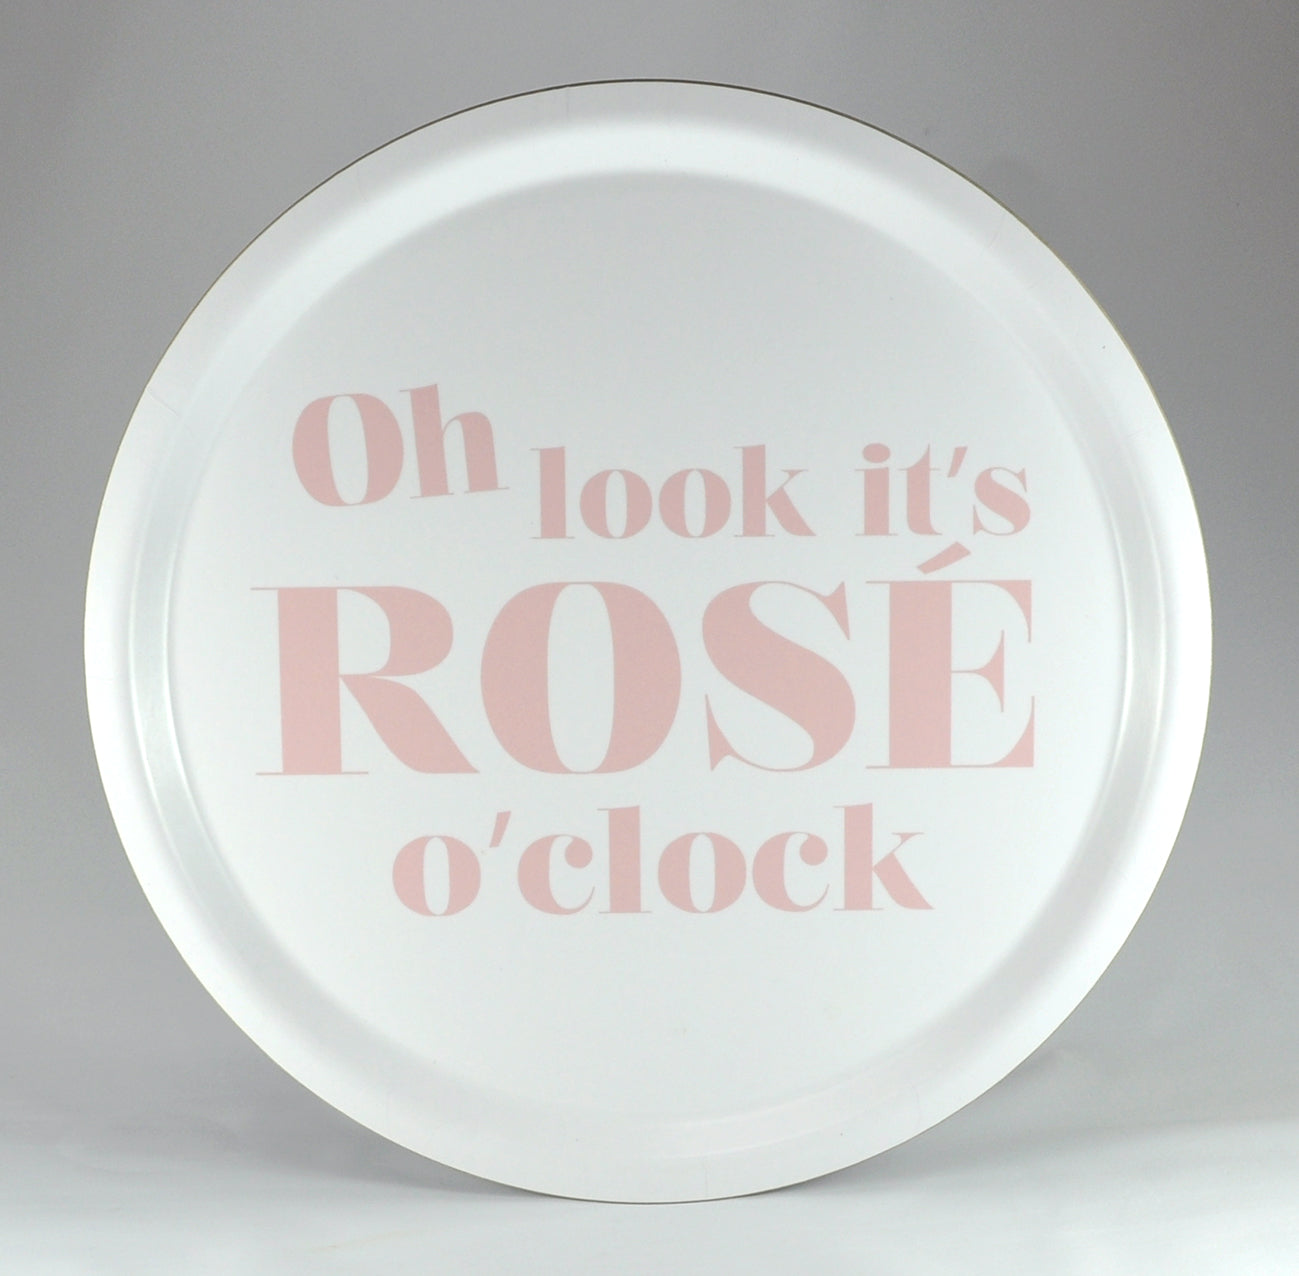 bricka rose o clock